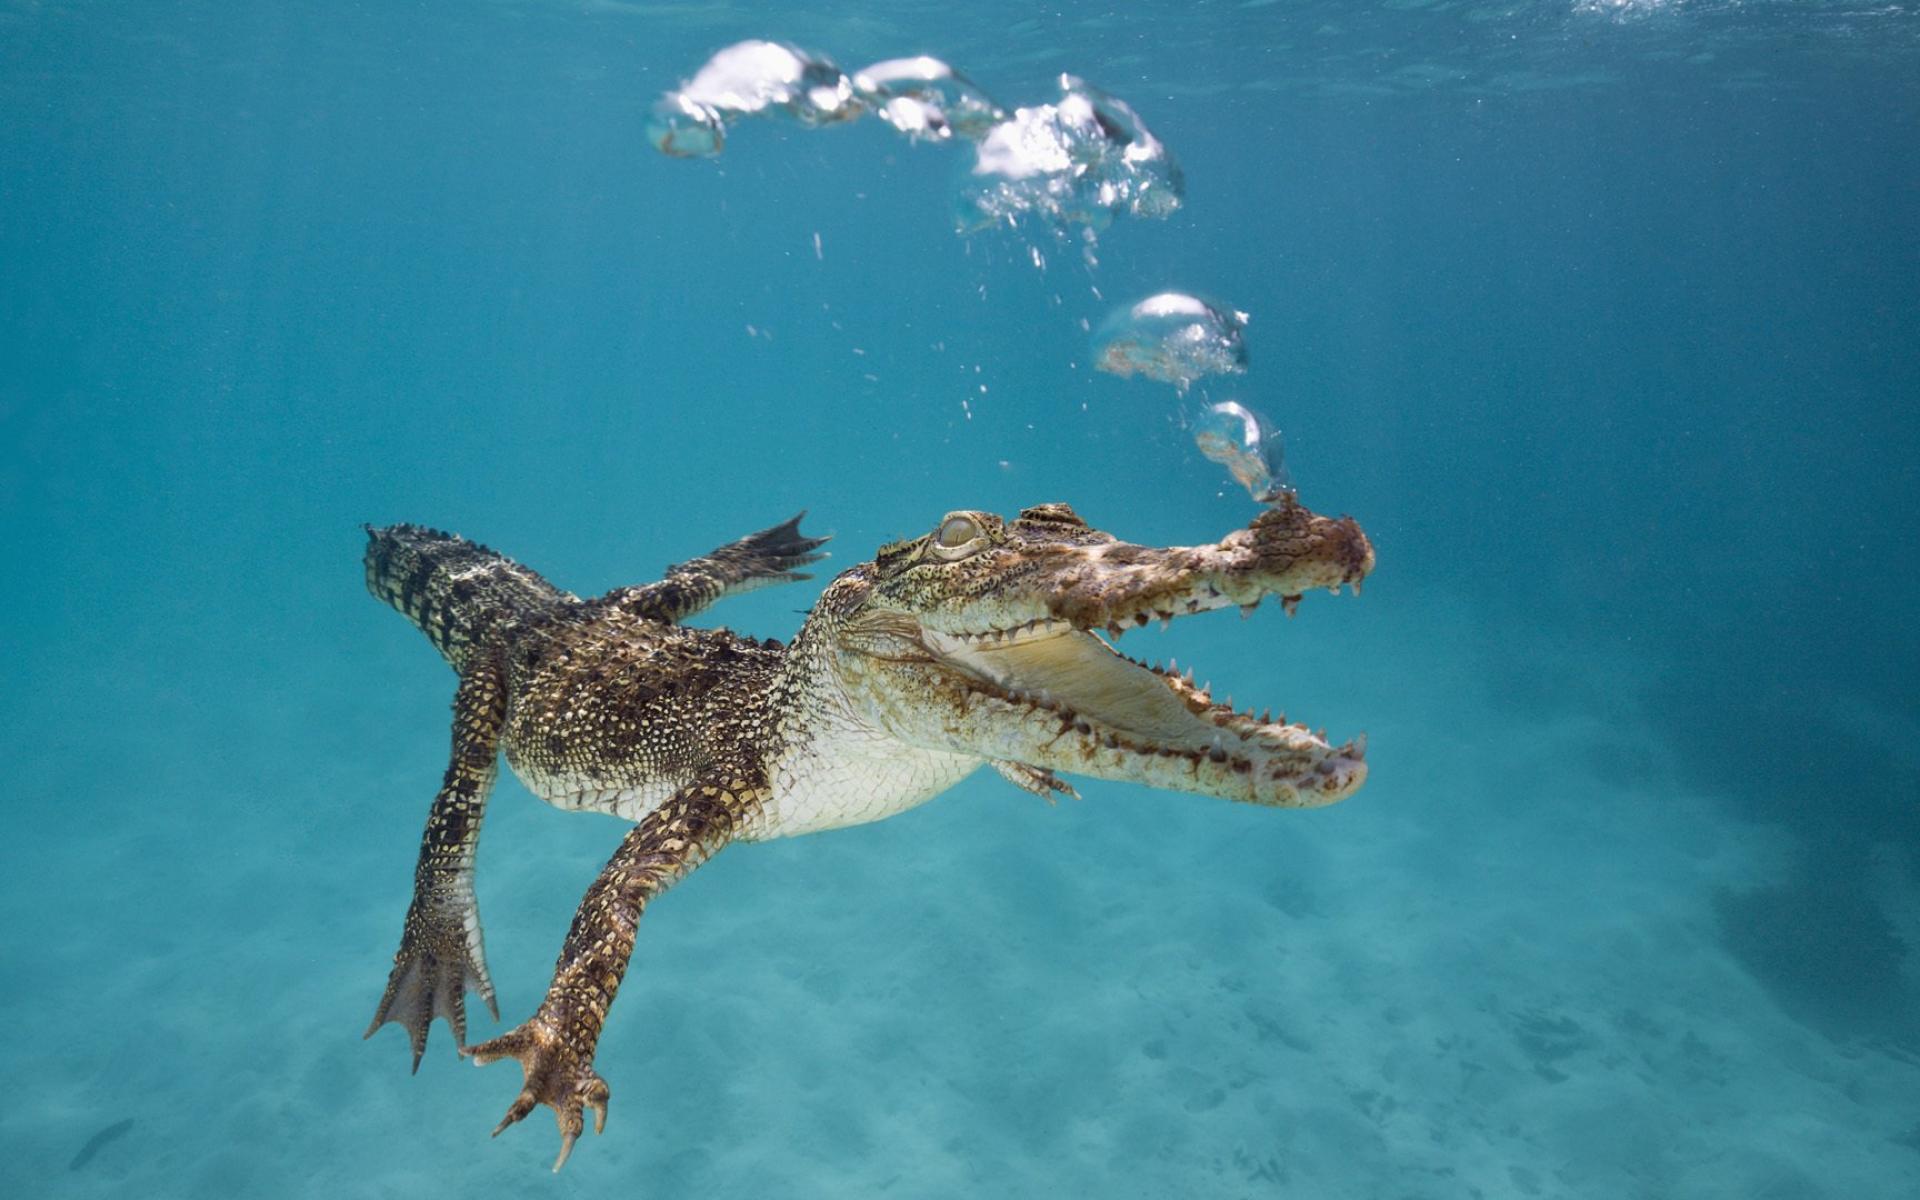 Mali krokodil pod vodom